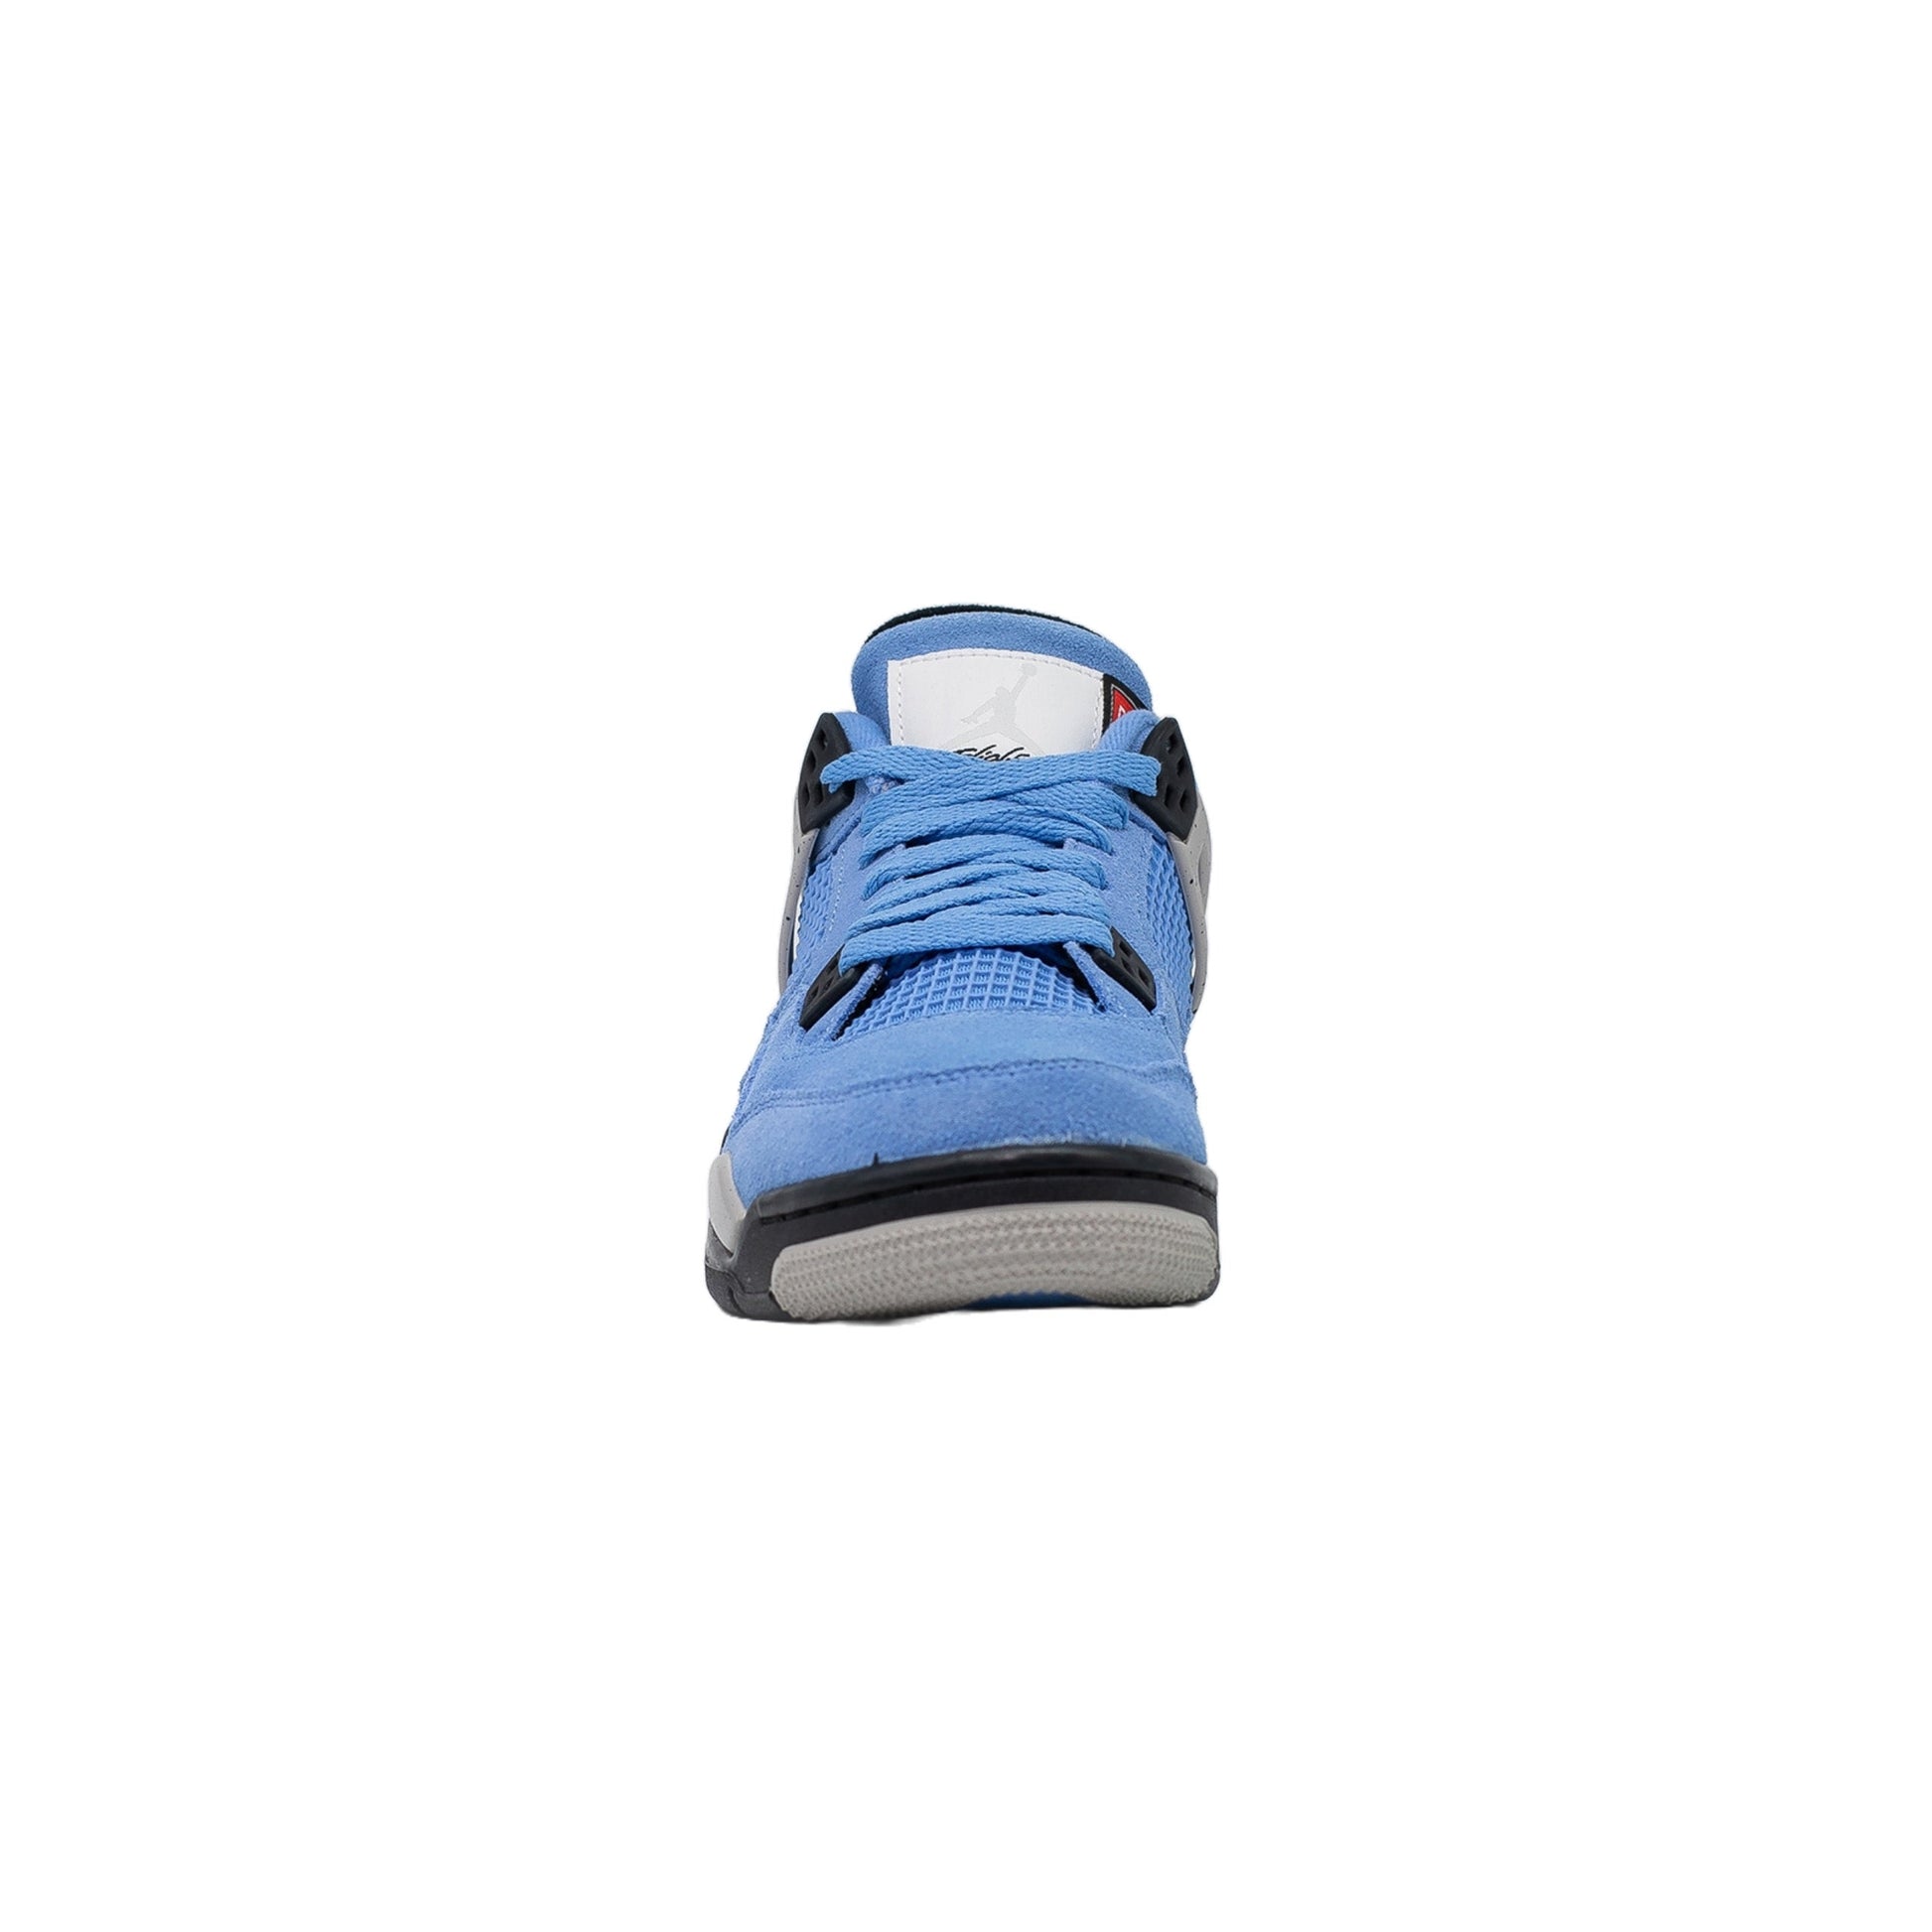 Air Jordan 4 (GS), University Blue